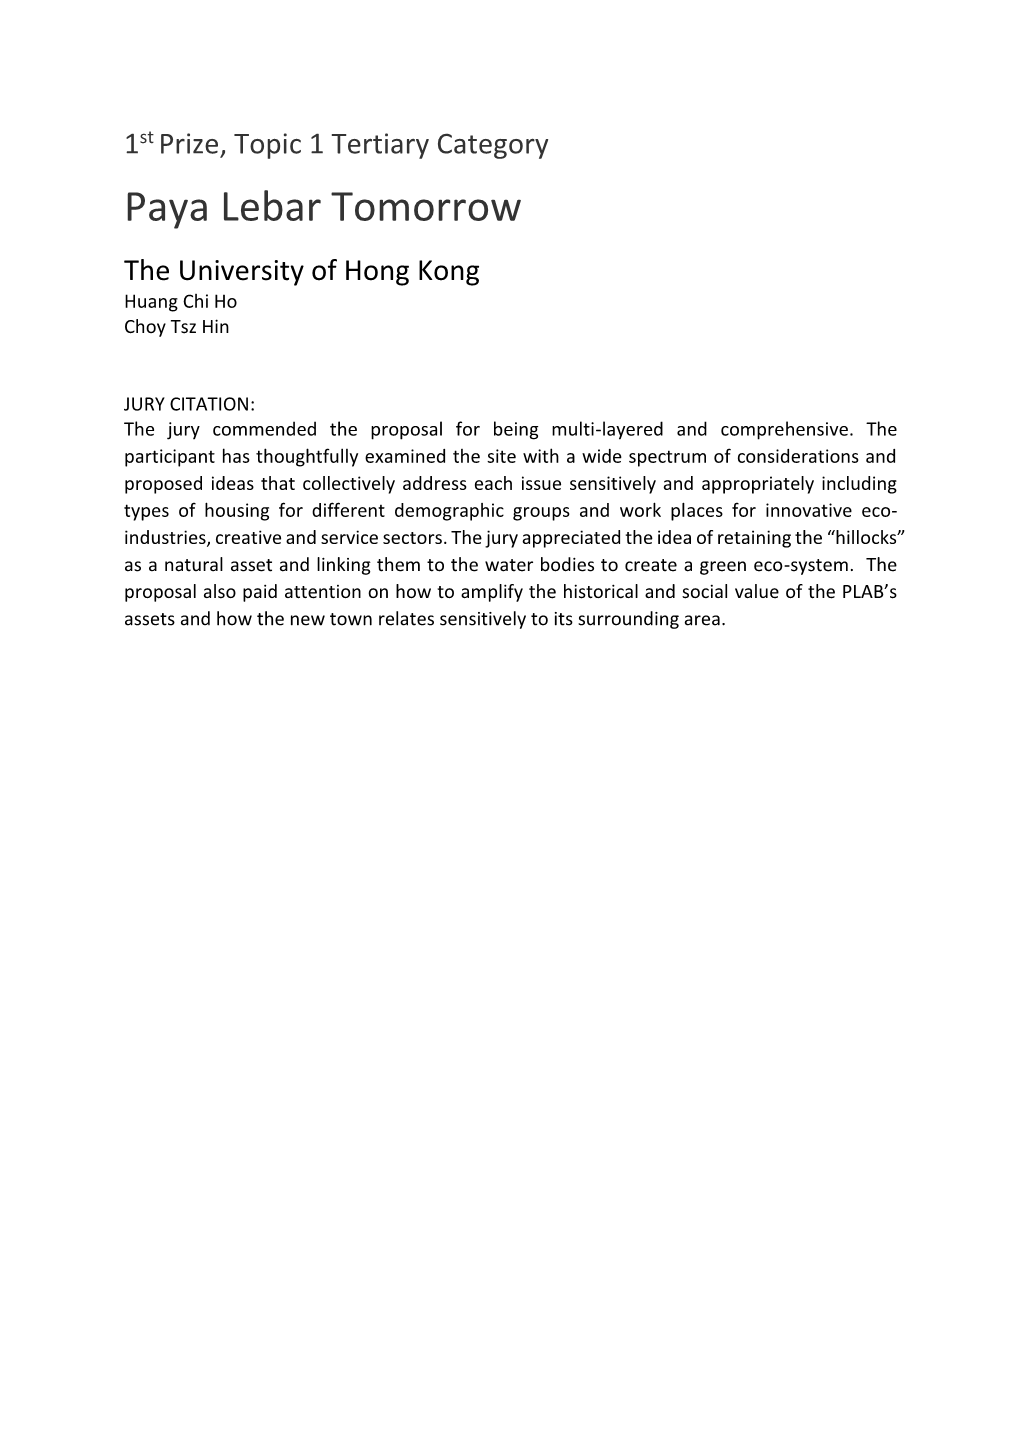 Paya Lebar Tomorrow the University of Hong Kong Huang Chi Ho Choy Tsz Hin